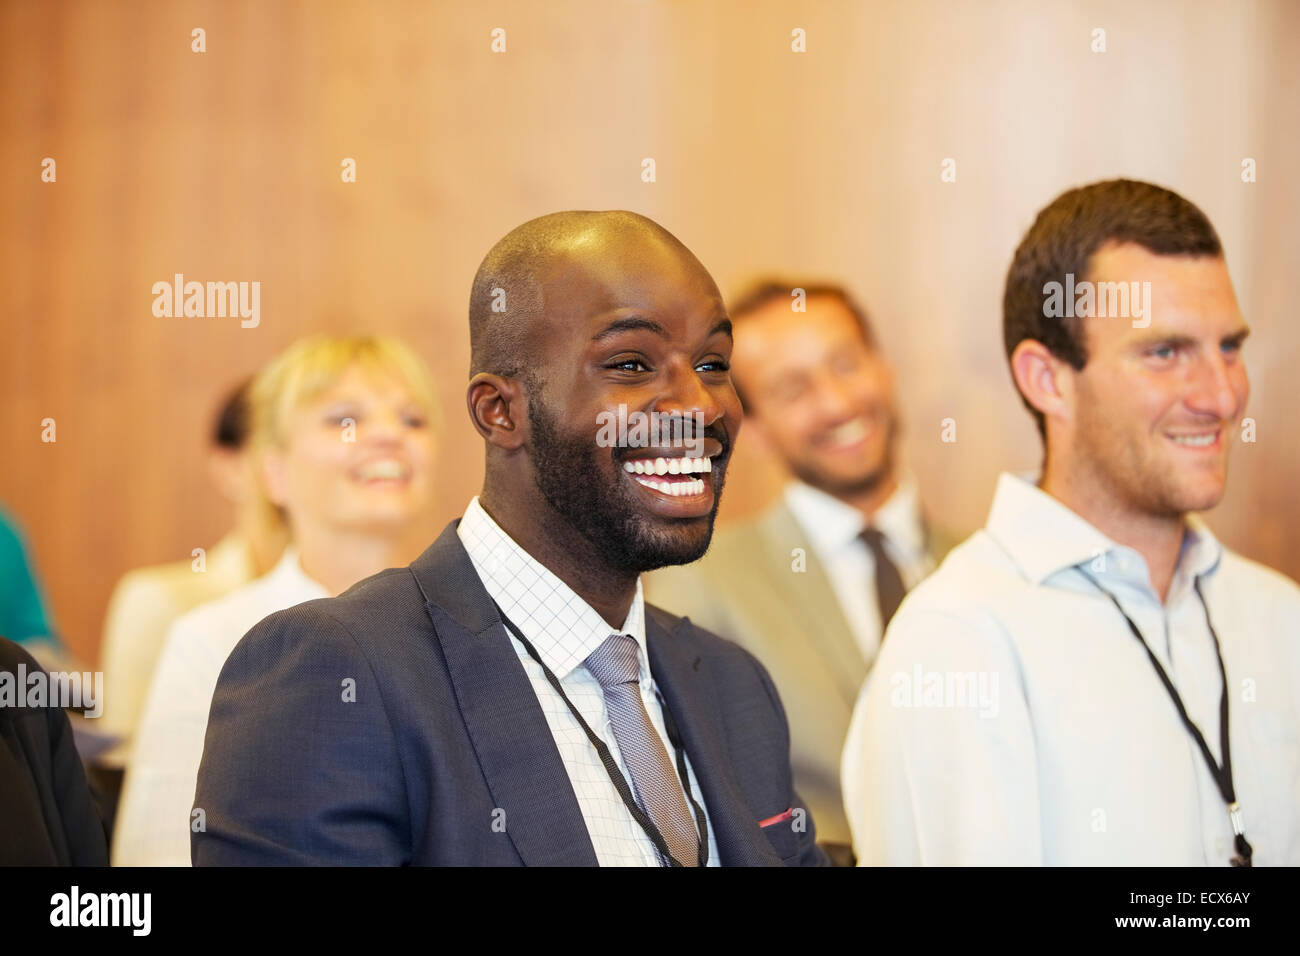 Porträt von zwei jungen Männern, ein Lachen, sitzen im Konferenzraum Stockfoto